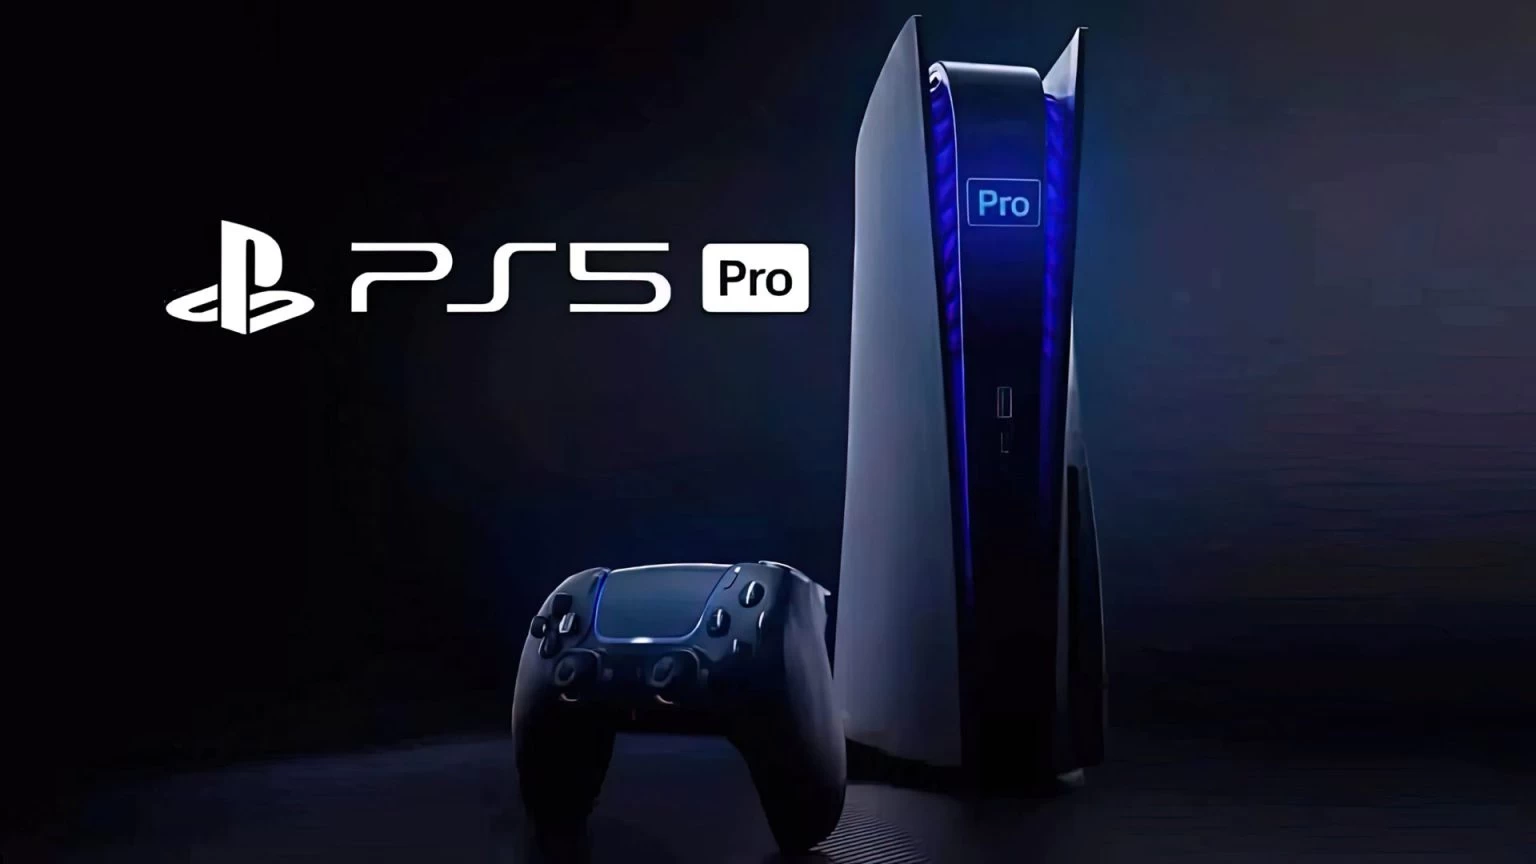 مشخصات سخت افزاری PS5 Pro